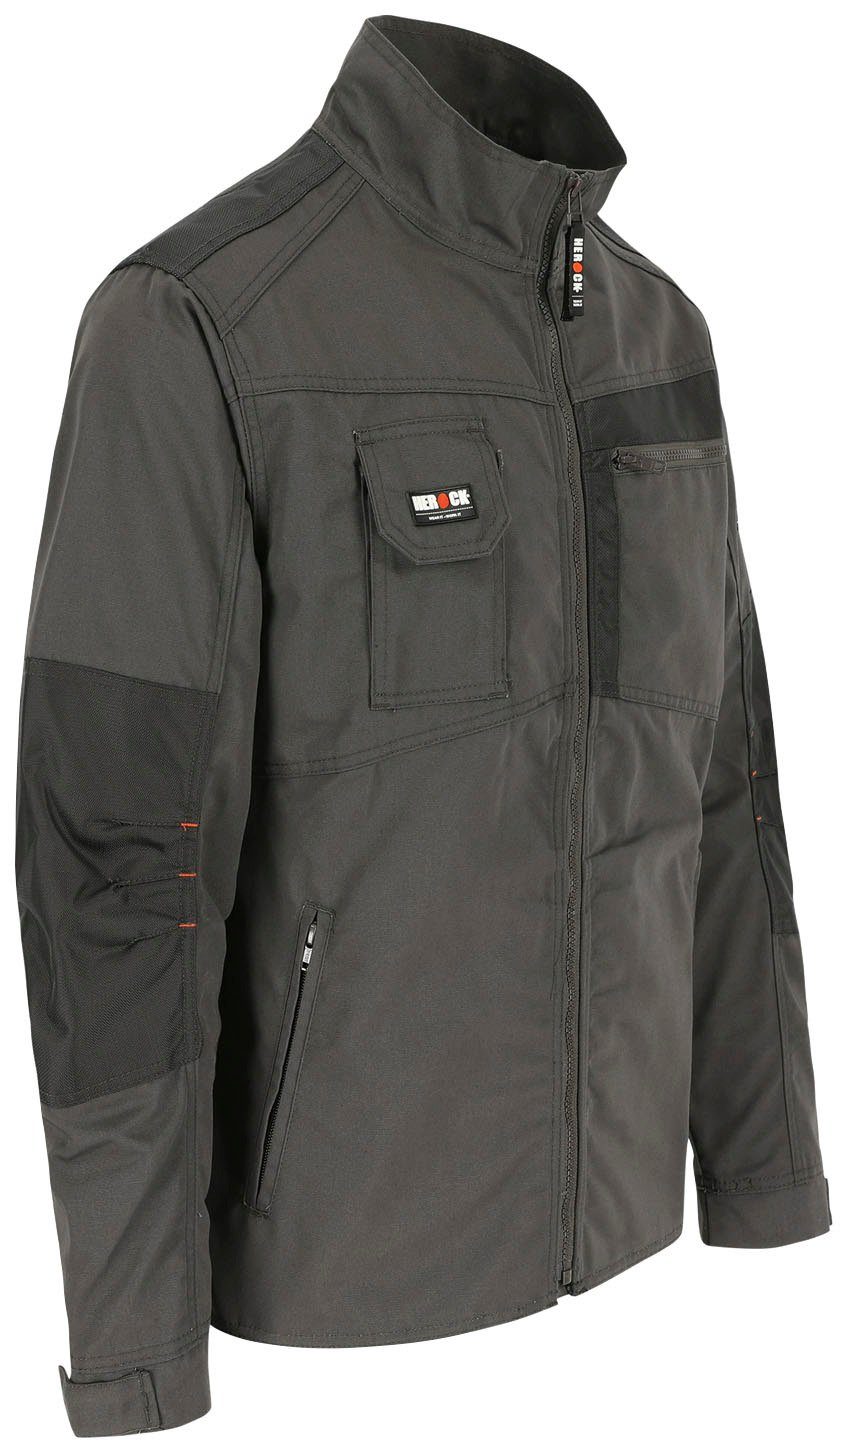 verstellbare Arbeitsjacke grau Bündchen - robust - Herock 7 Taschen - Wasserabweisend Jacke Anzar